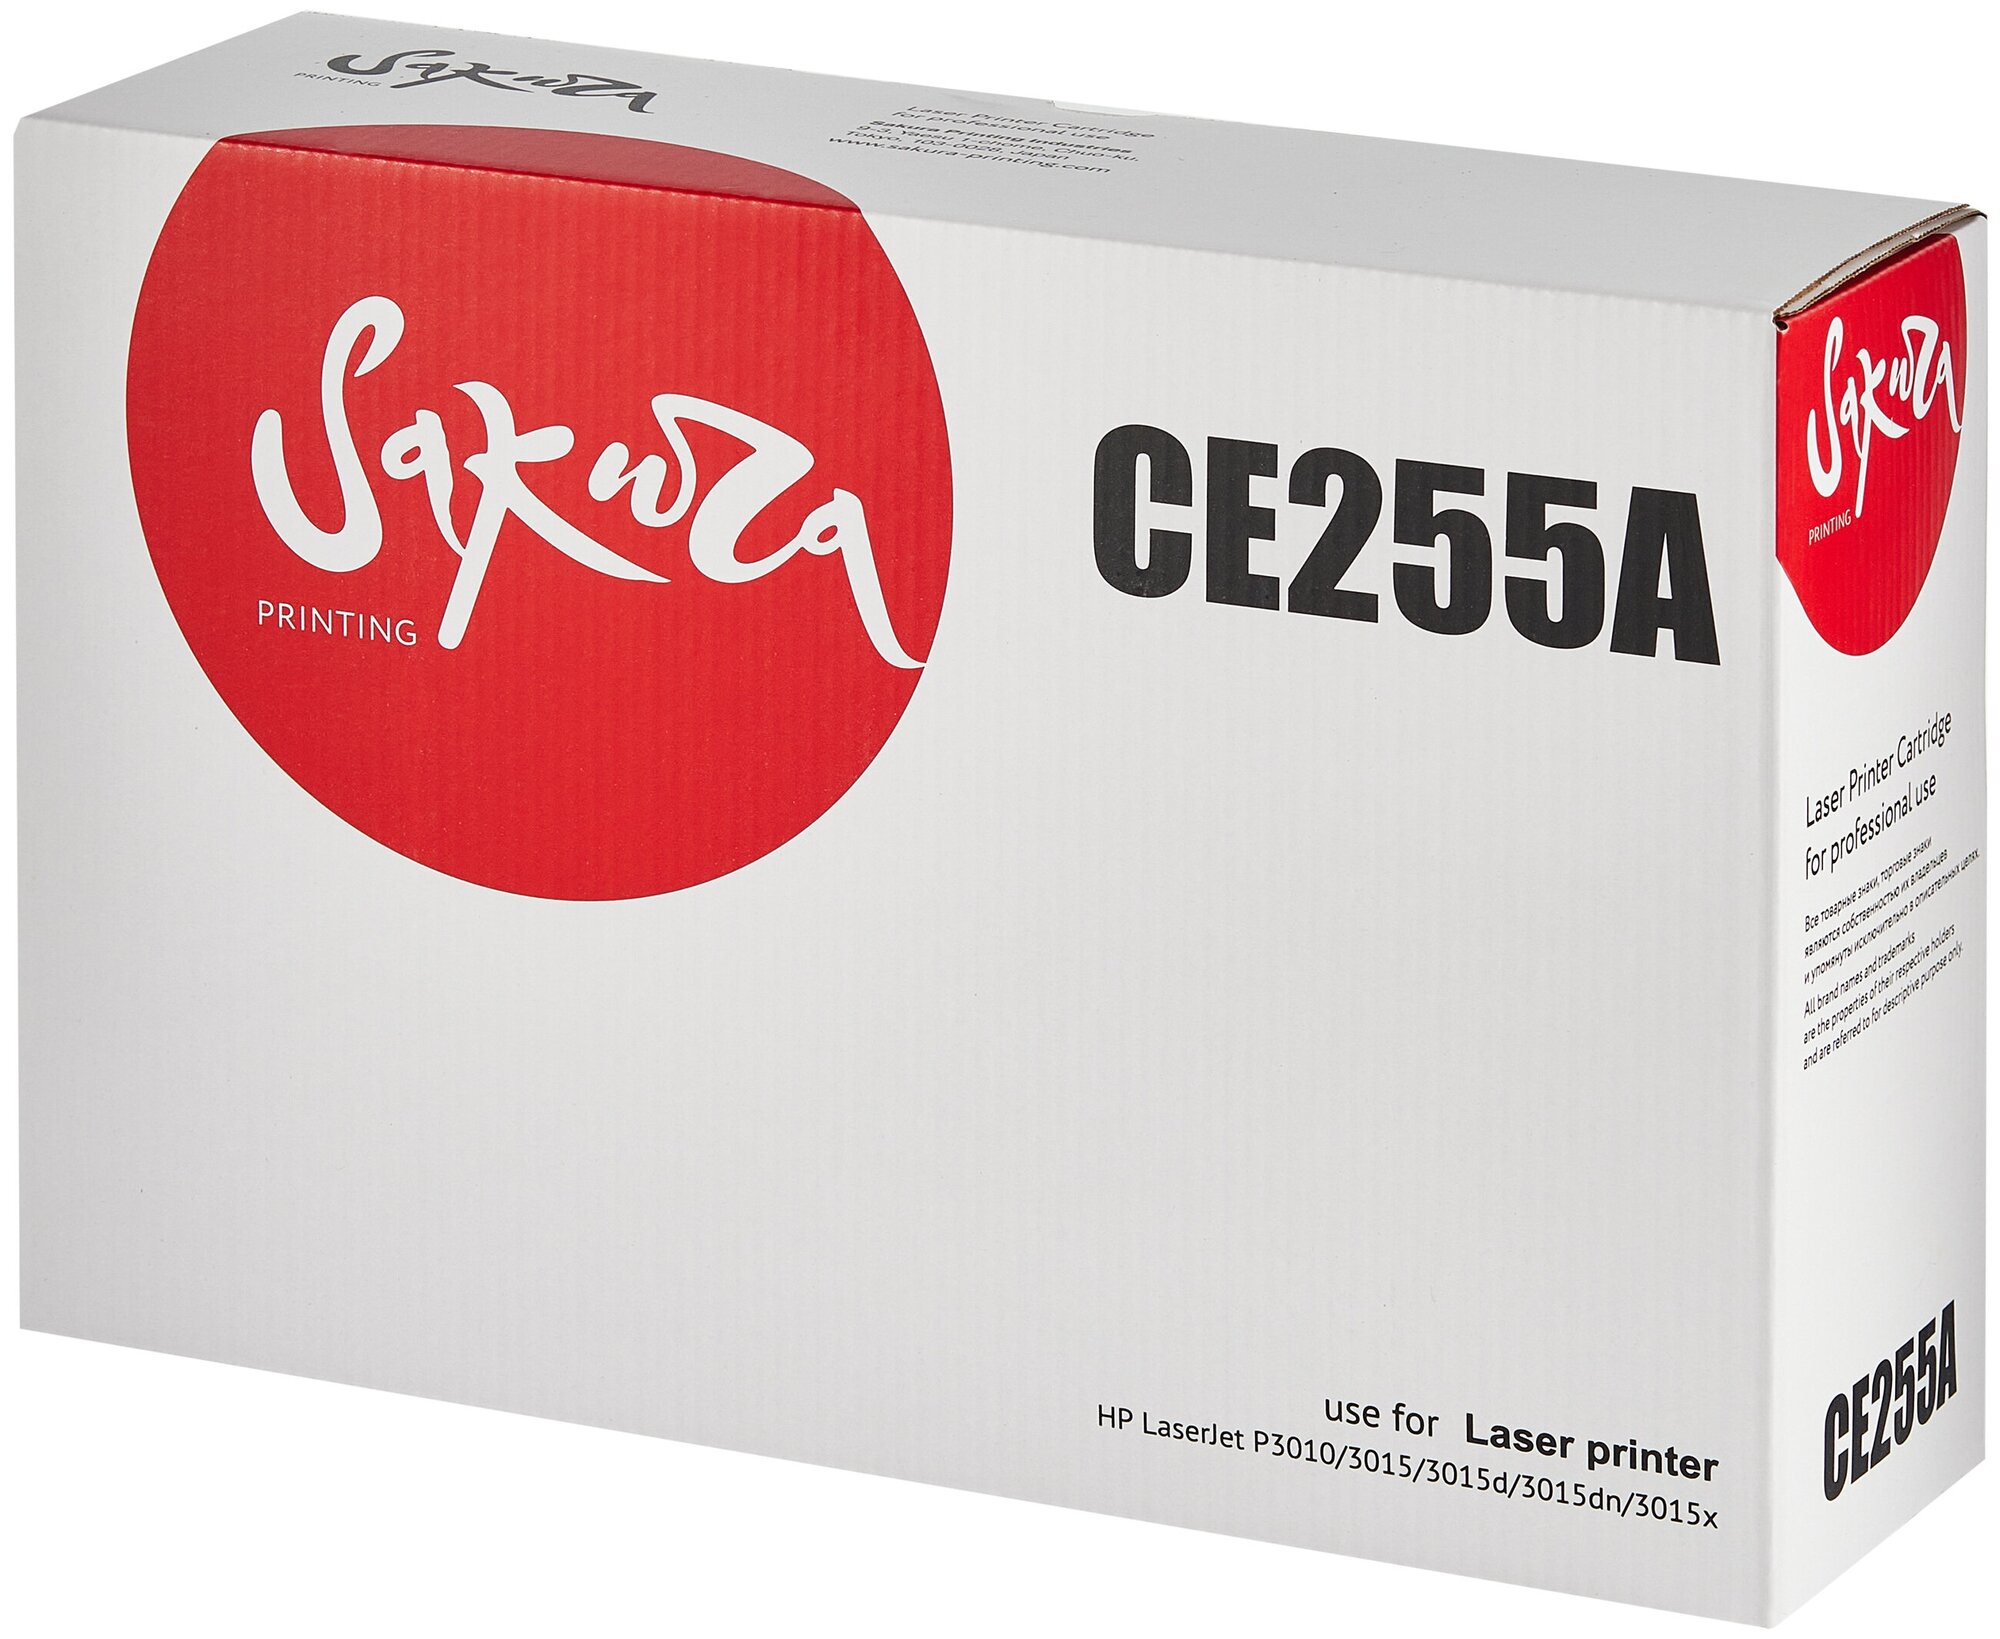 Картридж CE255A (55A) для HP, лазерный, черный, 6000 страниц, Sakura